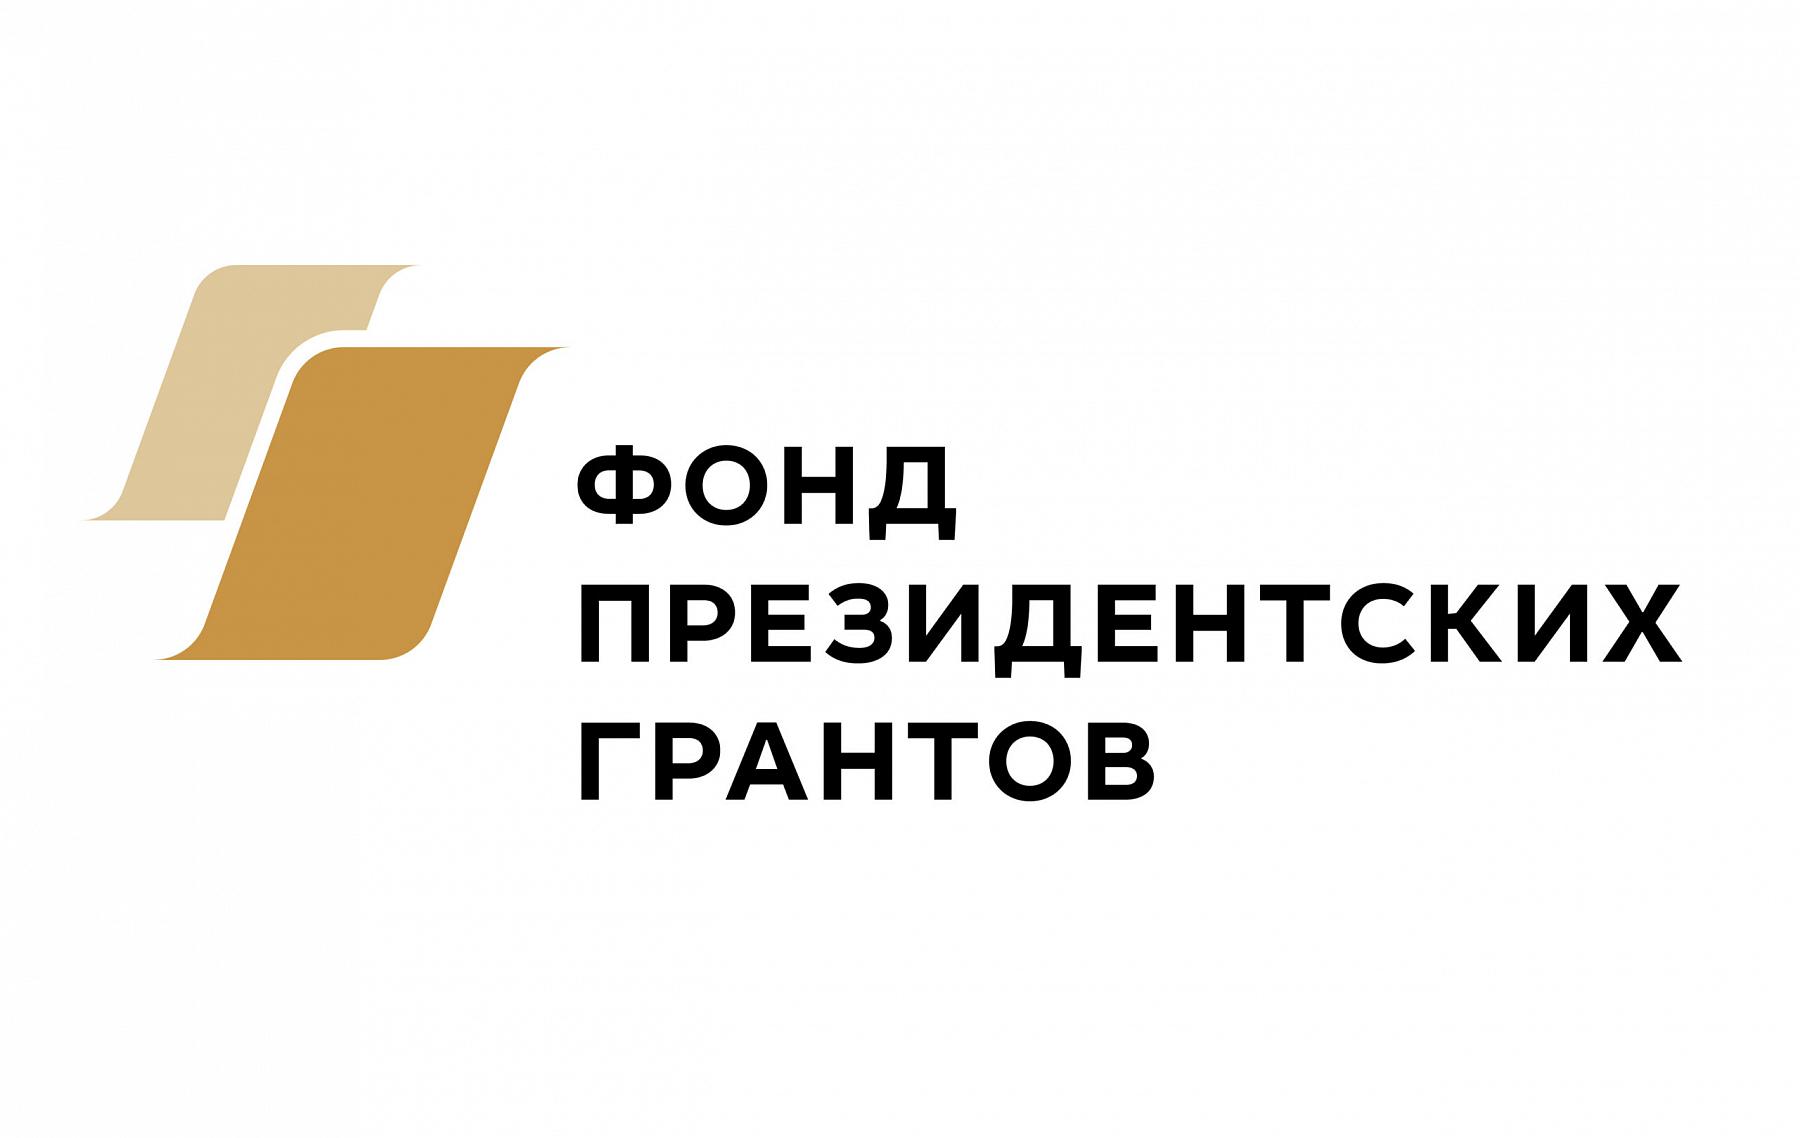 14 января были определены победители по итогам первого конкурса 2021 года Фонда президентских грантов. В Пермском крае всего 31 победитель.